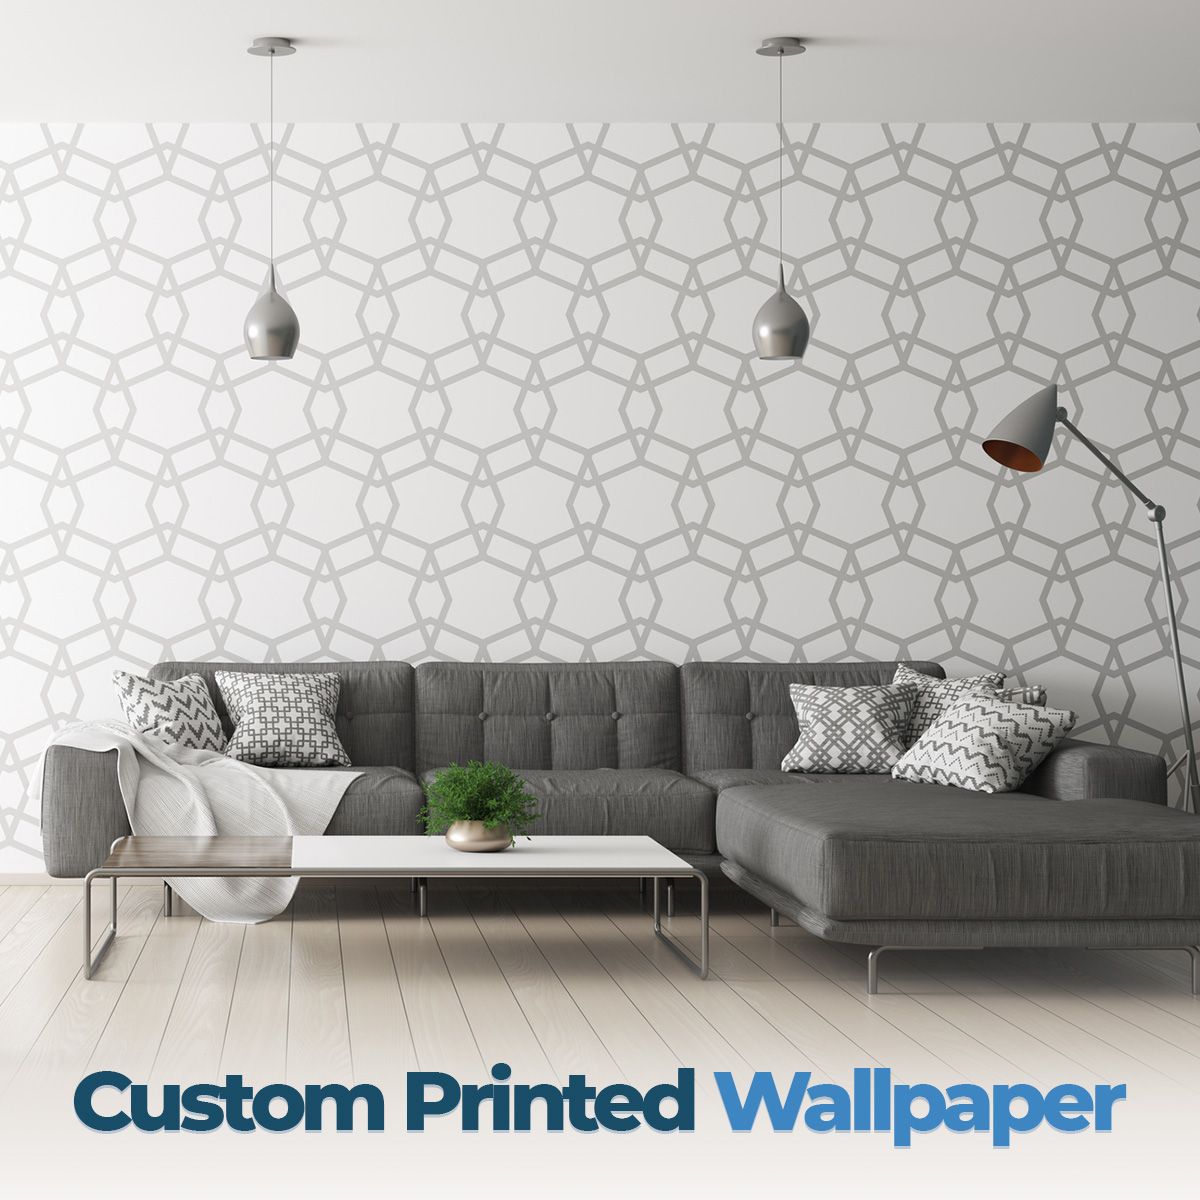 Custom Printed Wallpaper